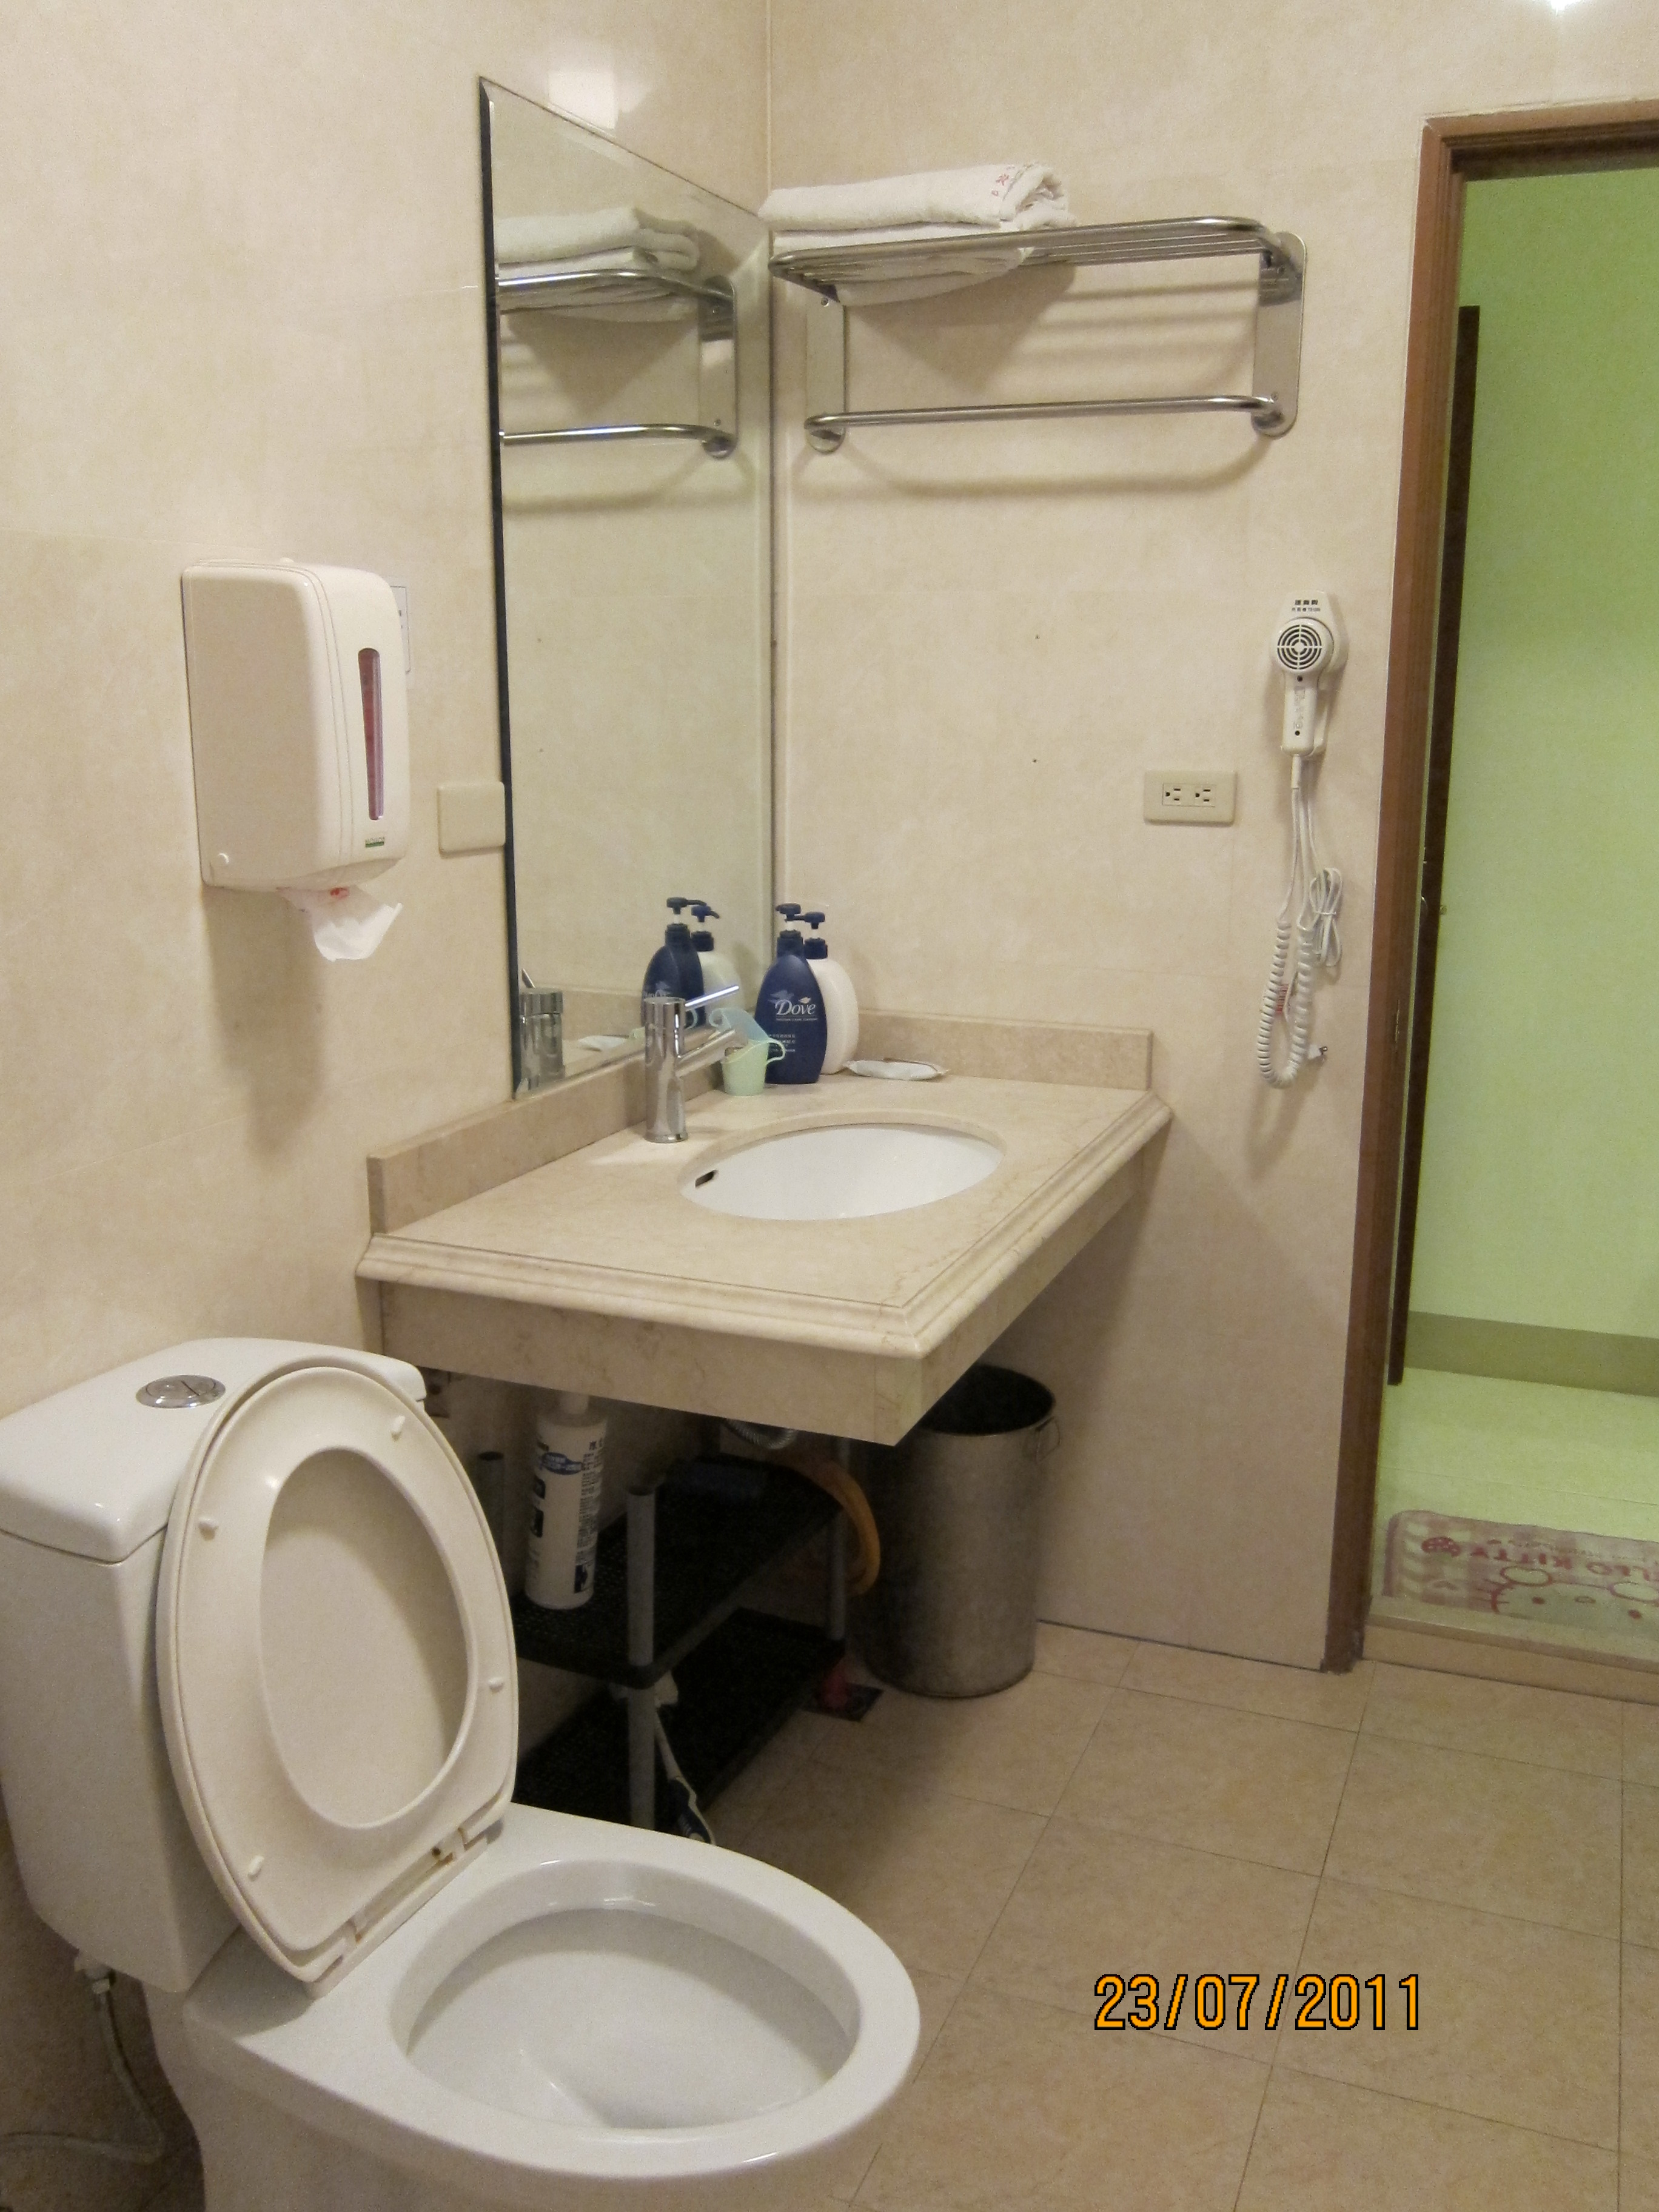 吹風機
浴巾
鏡子
淋浴設備
盥洗用品


